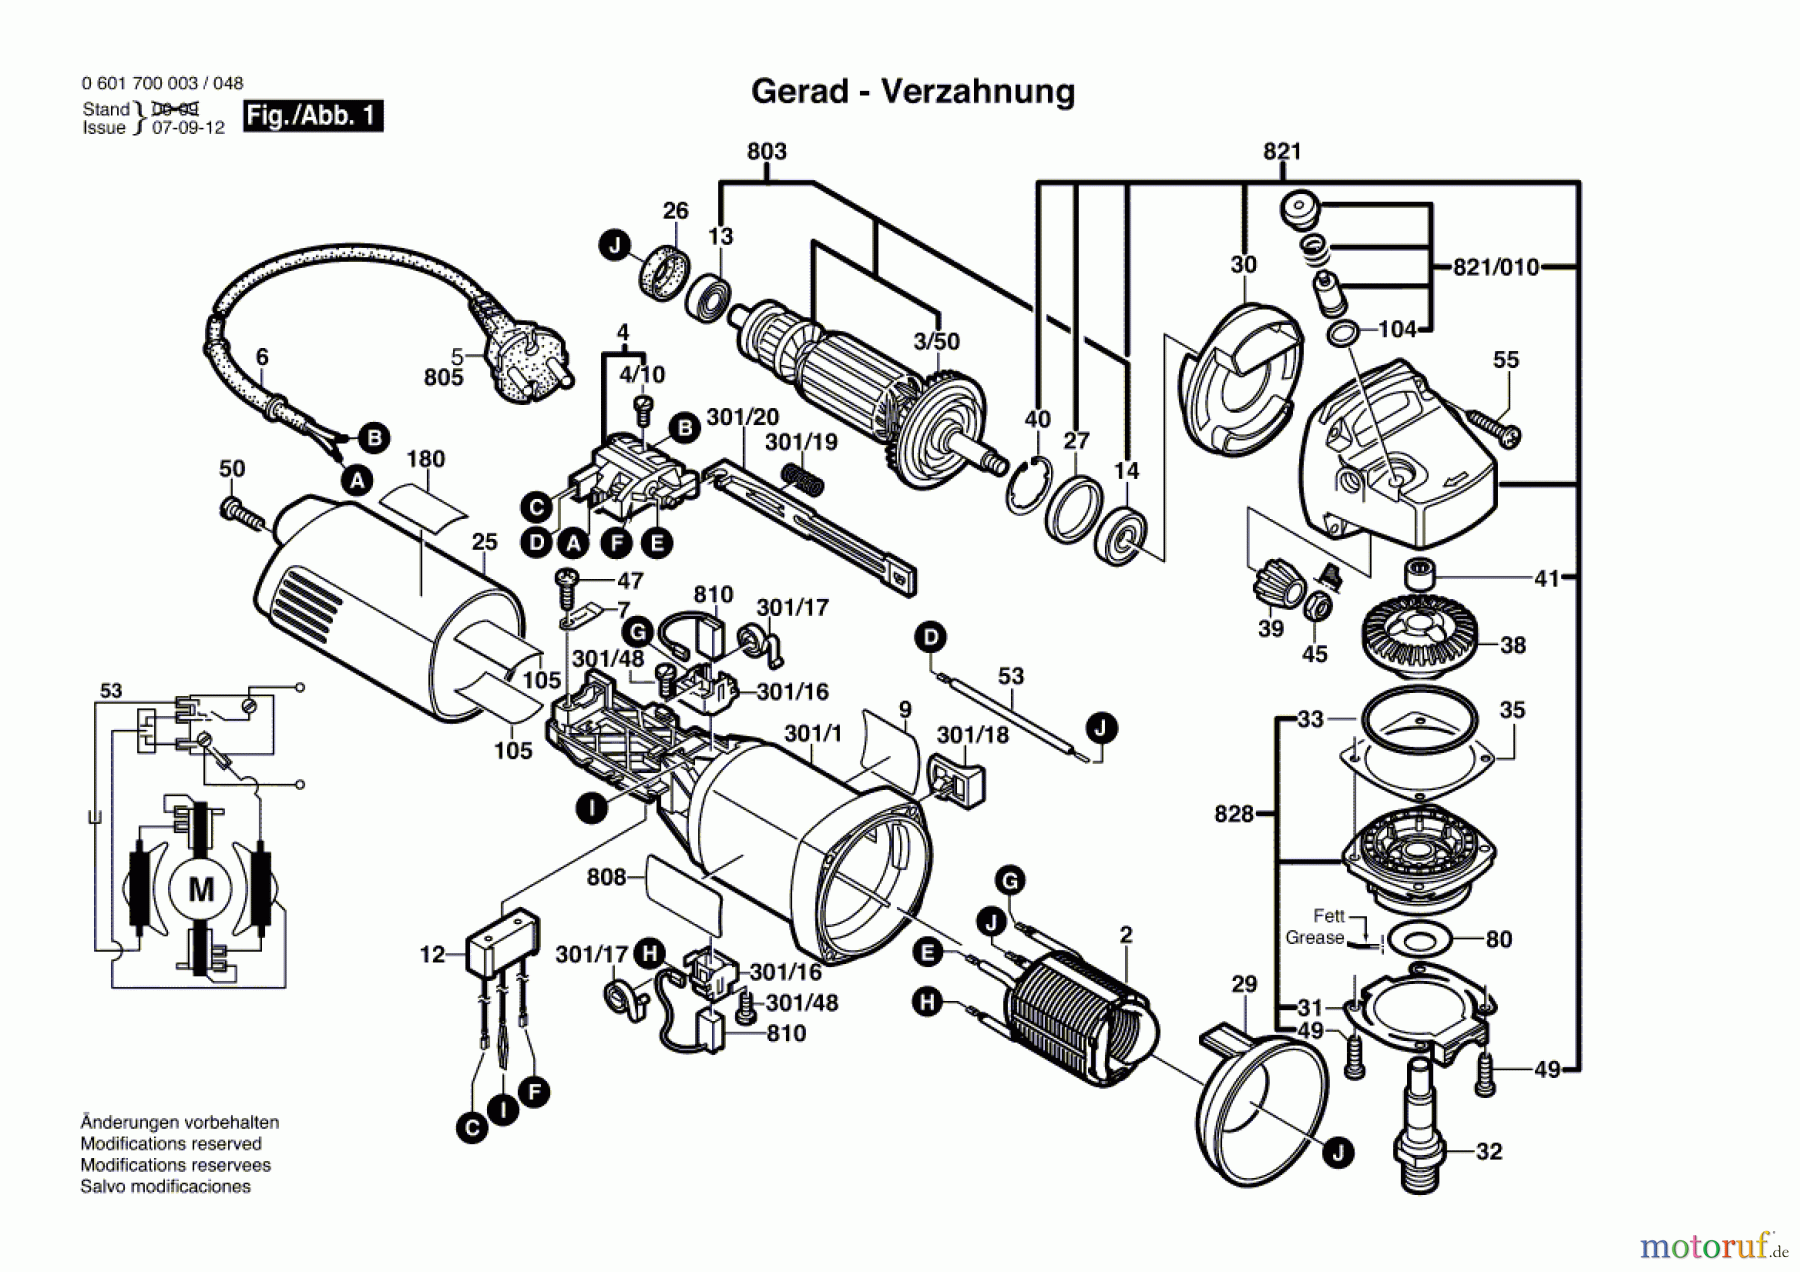  Bosch Werkzeug Winkelschleifer GWS 7-115 Seite 1